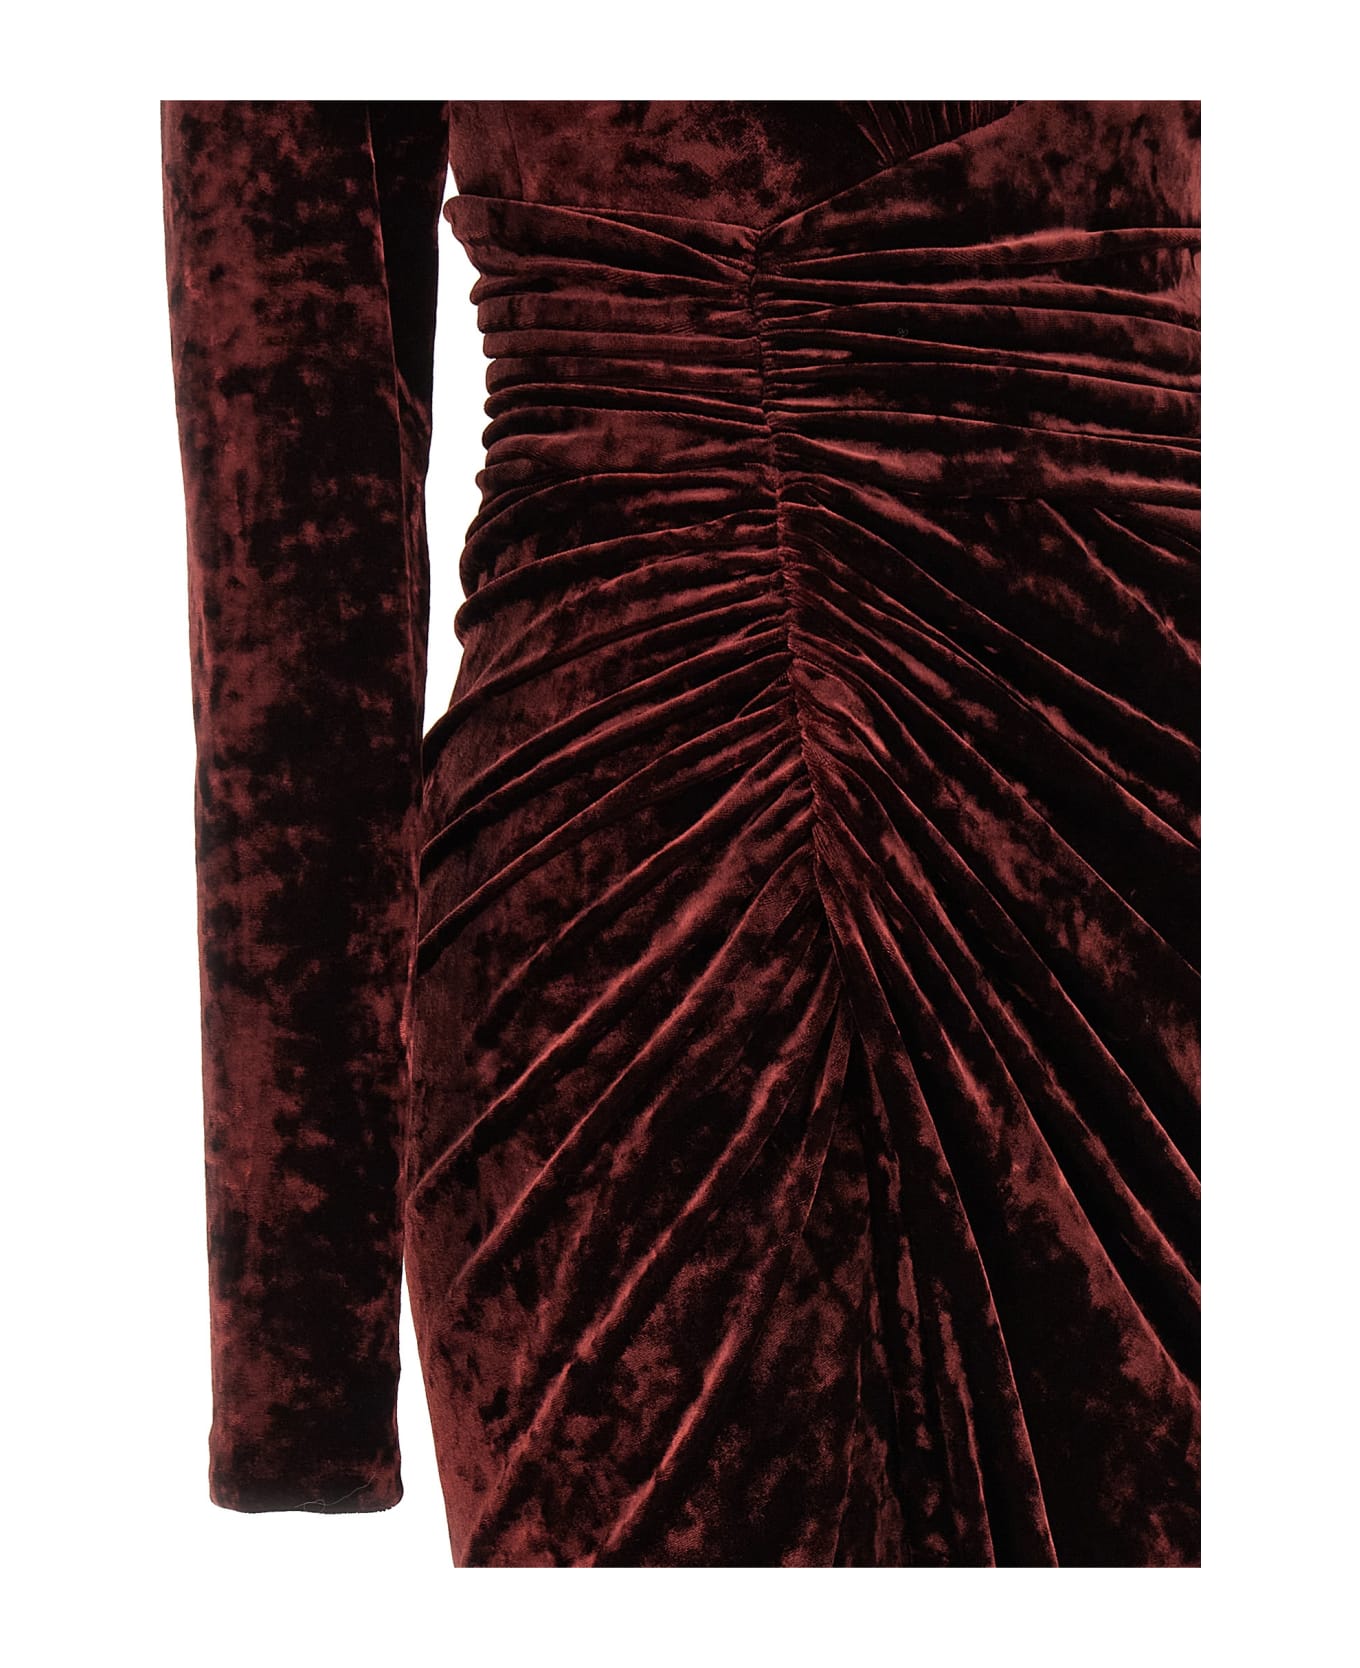 Alexandre Vauthier Long Velvet Dress - Black Cherry Red